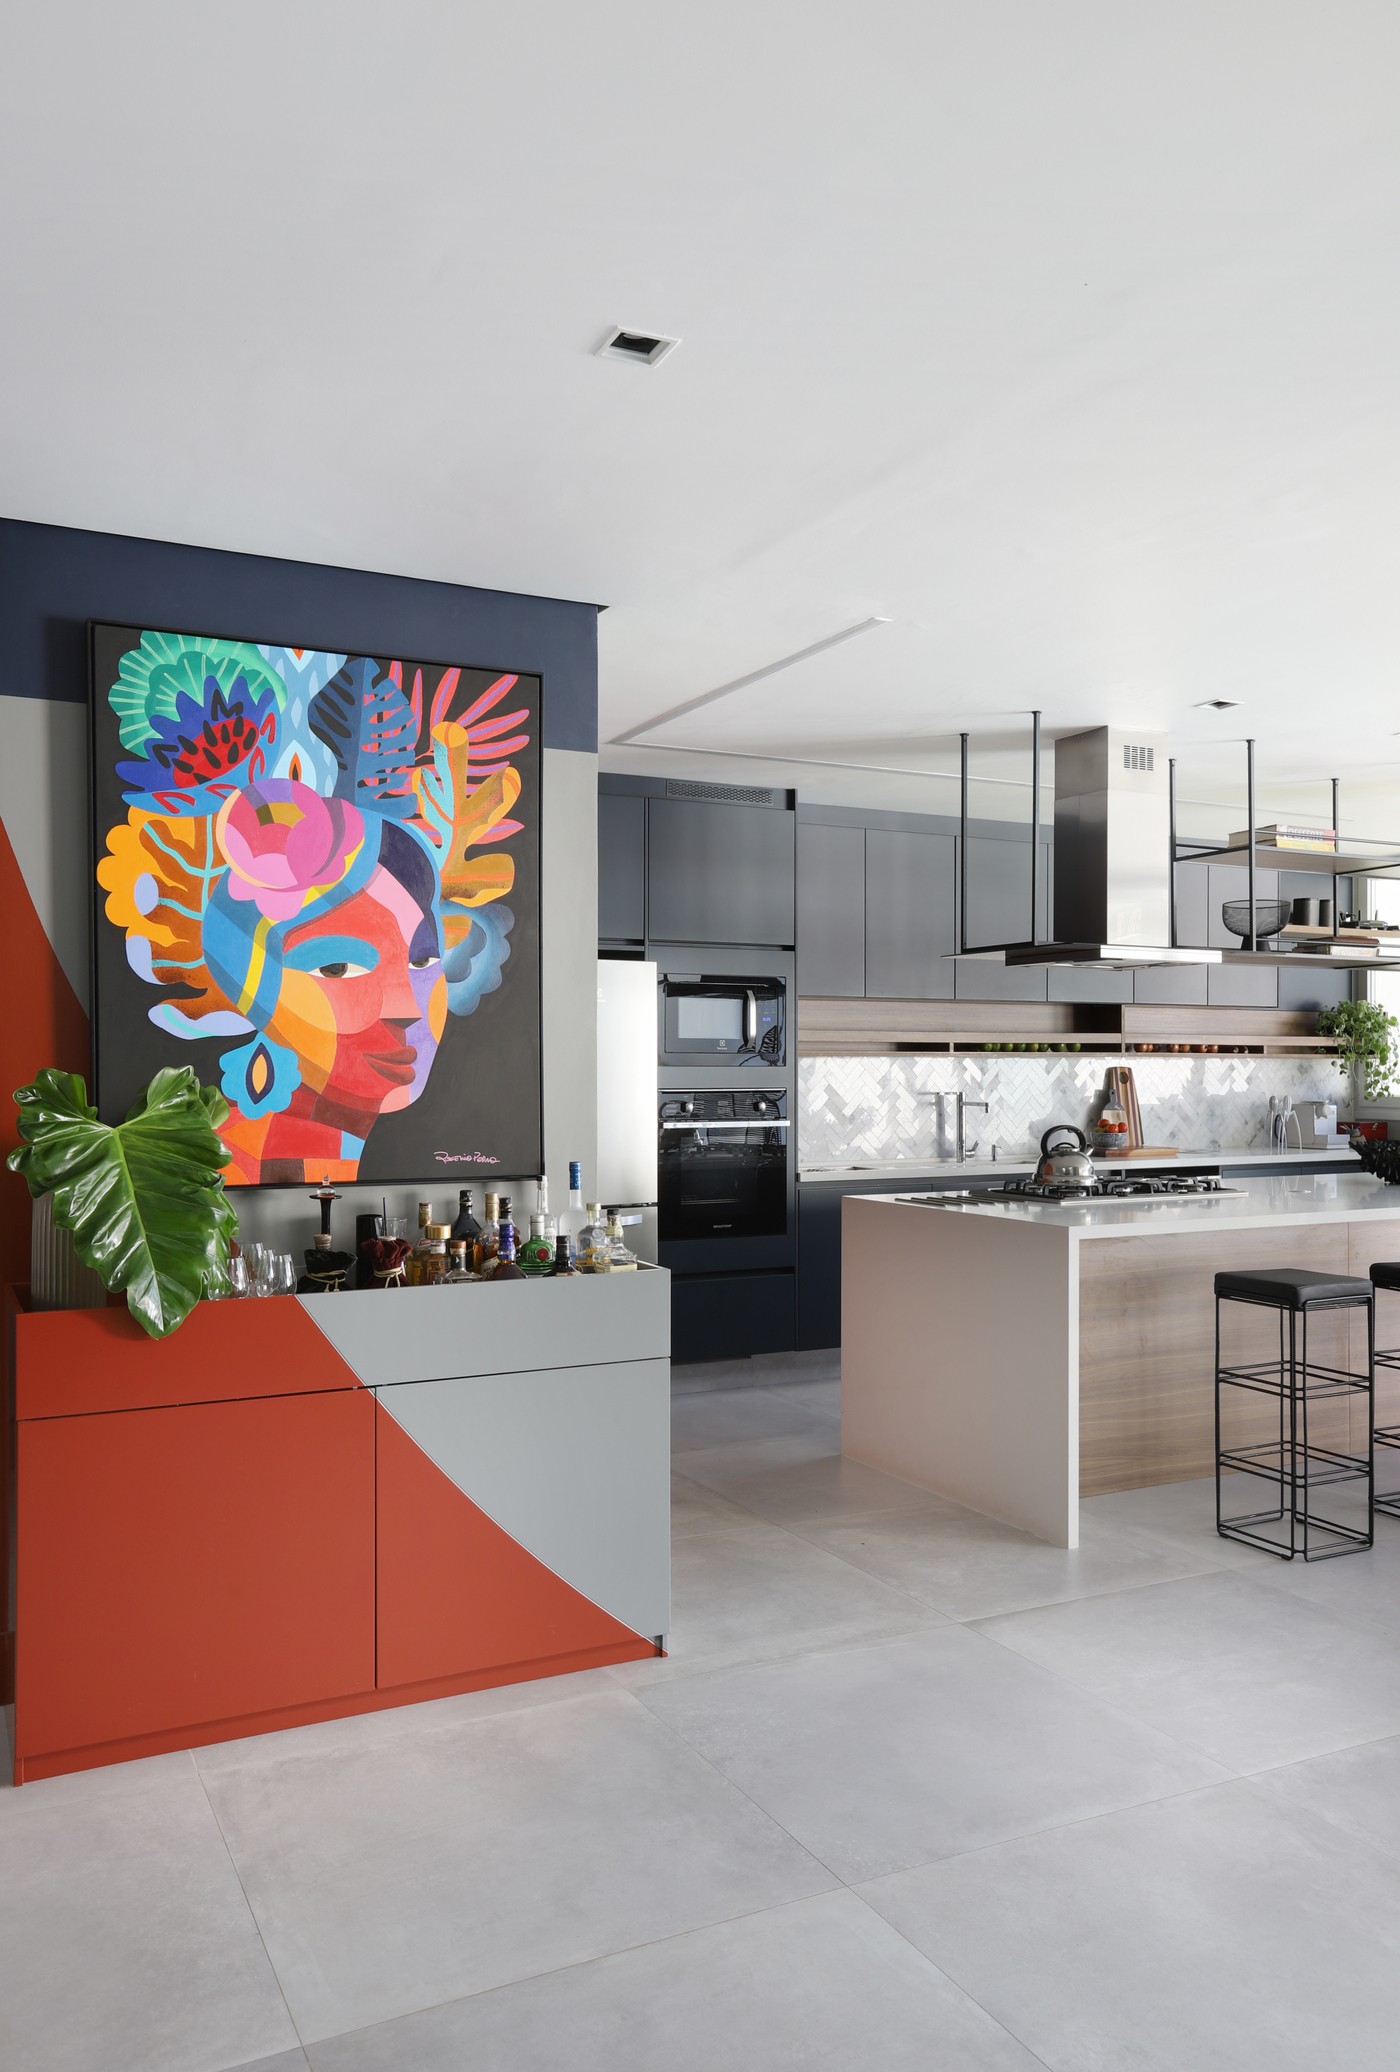 Décor do dia: cozinha aberta para a sala tem pintura geométrica e decoração jovial (Foto: Mariana Orsi)